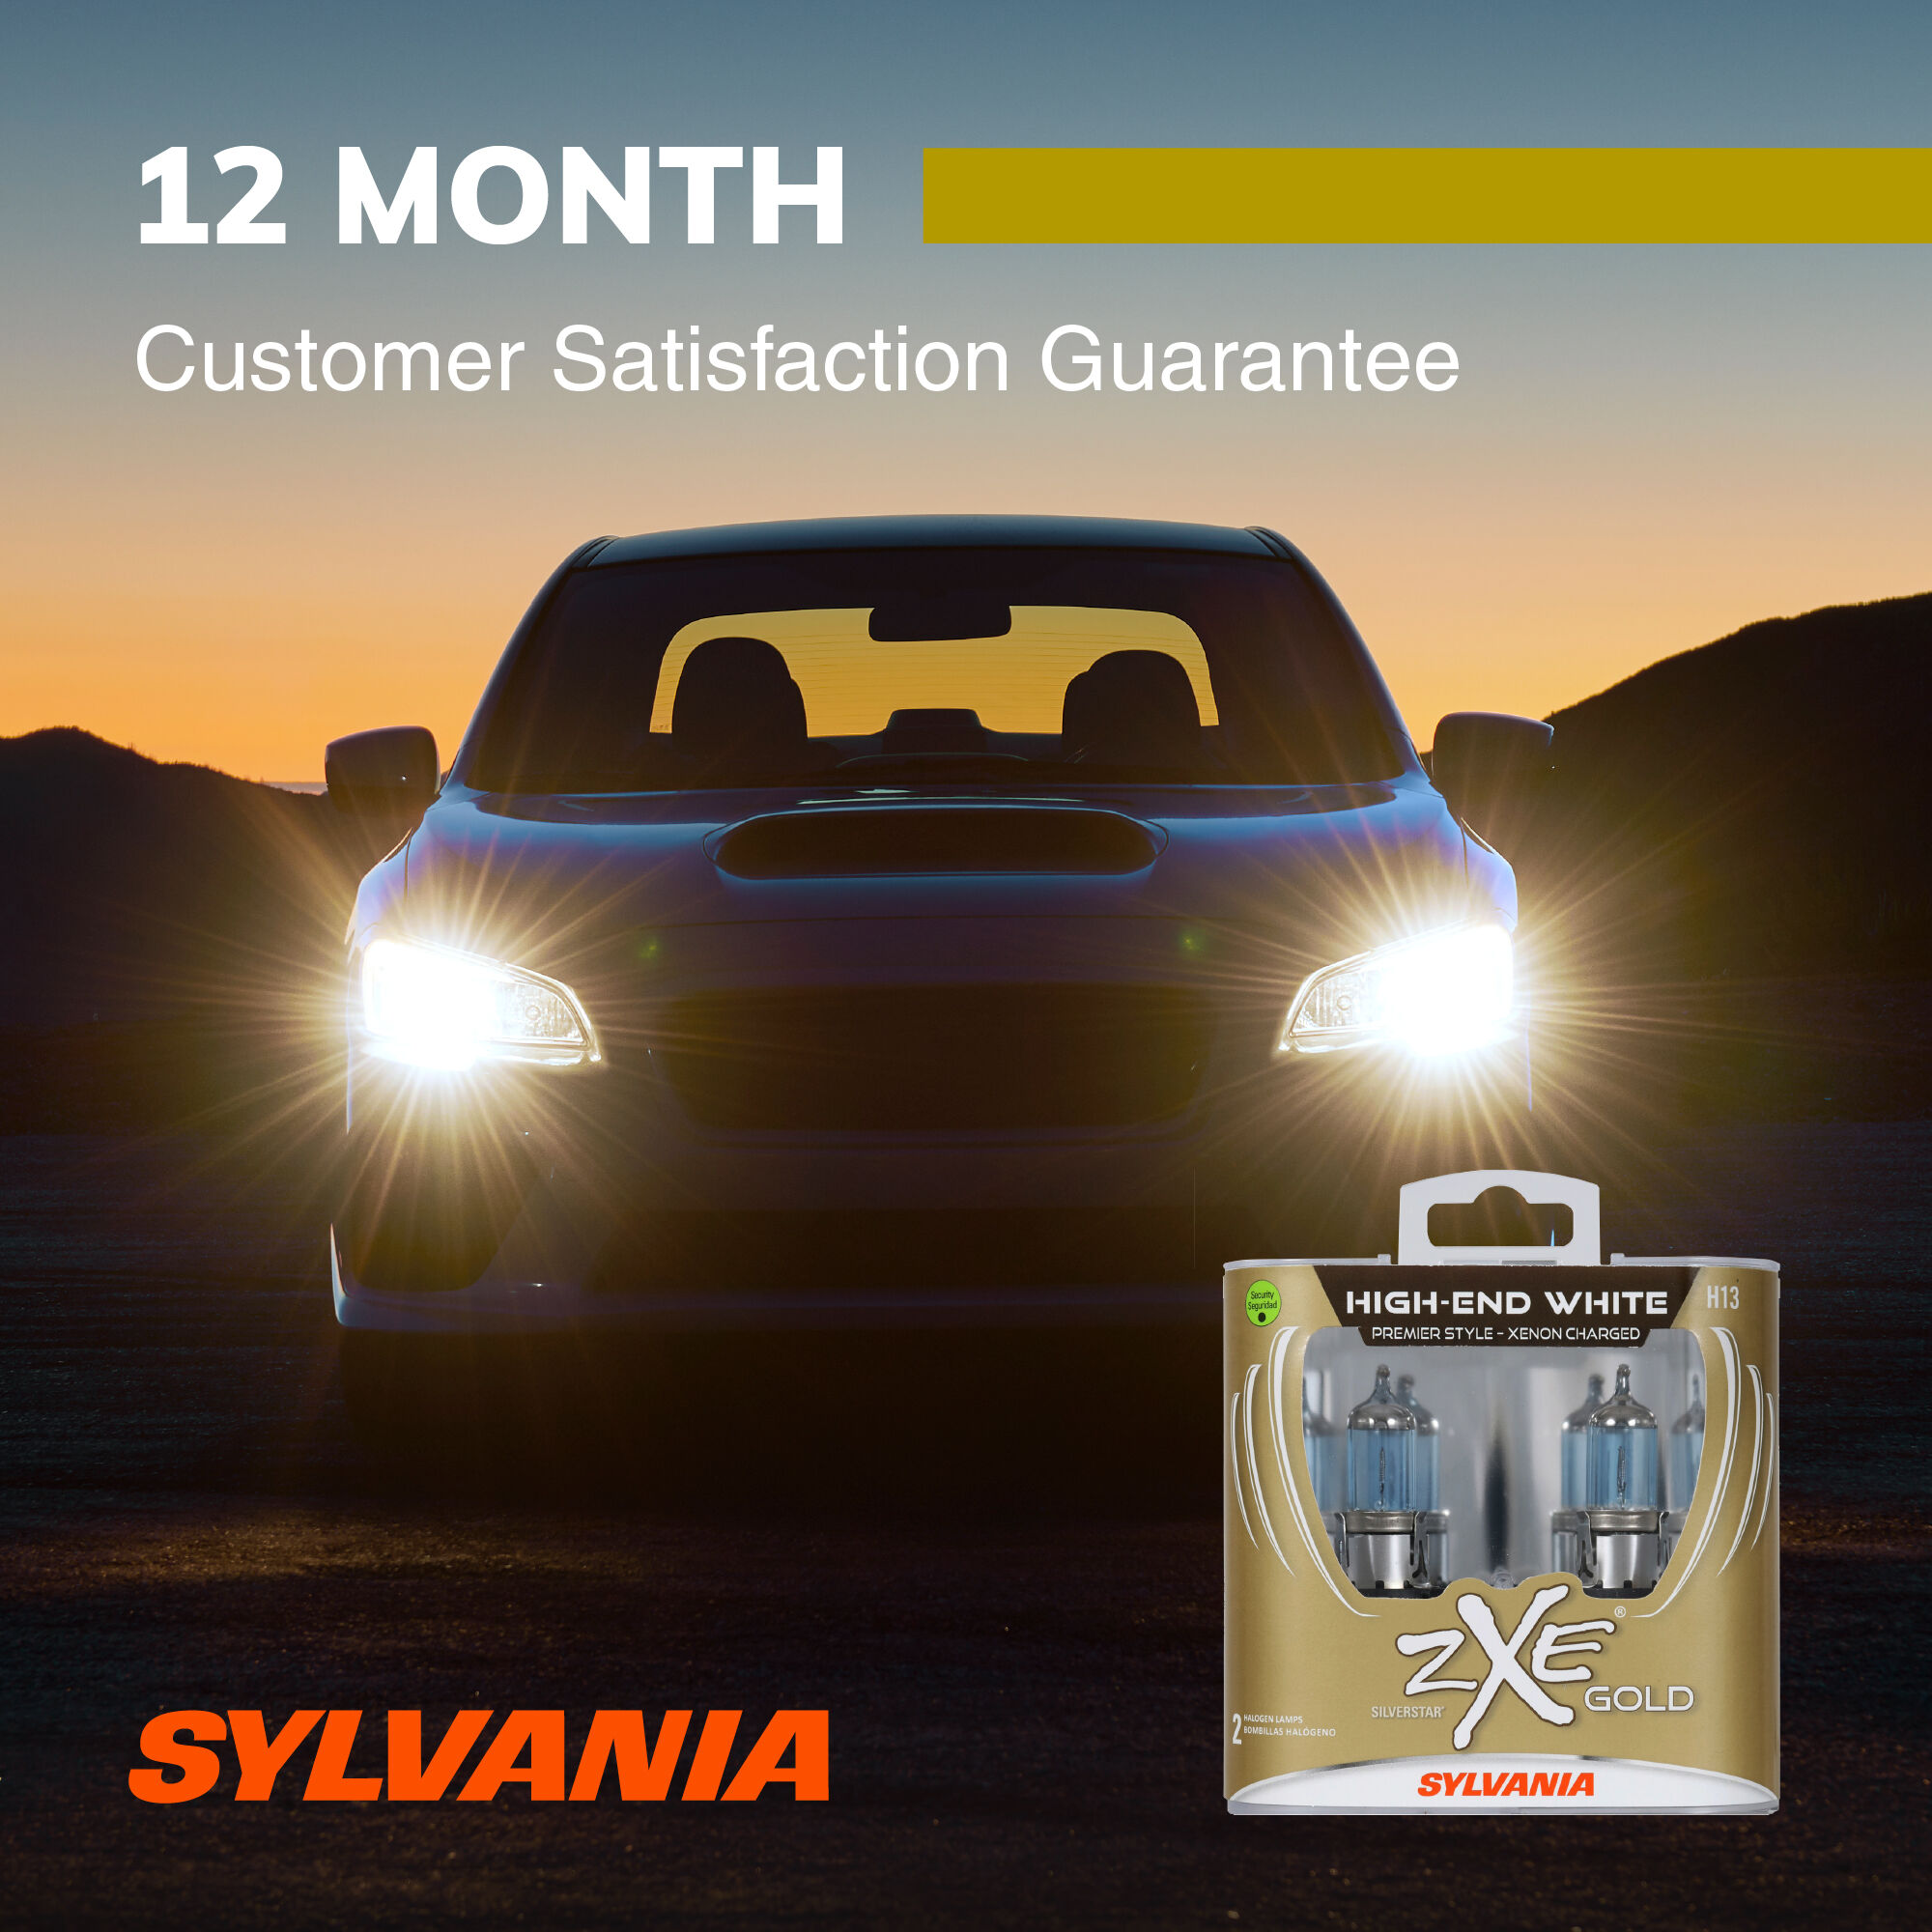 SYLVANIA H13 SilverStar zXe Gold Halogen Headlight Bulb, 2 Pack